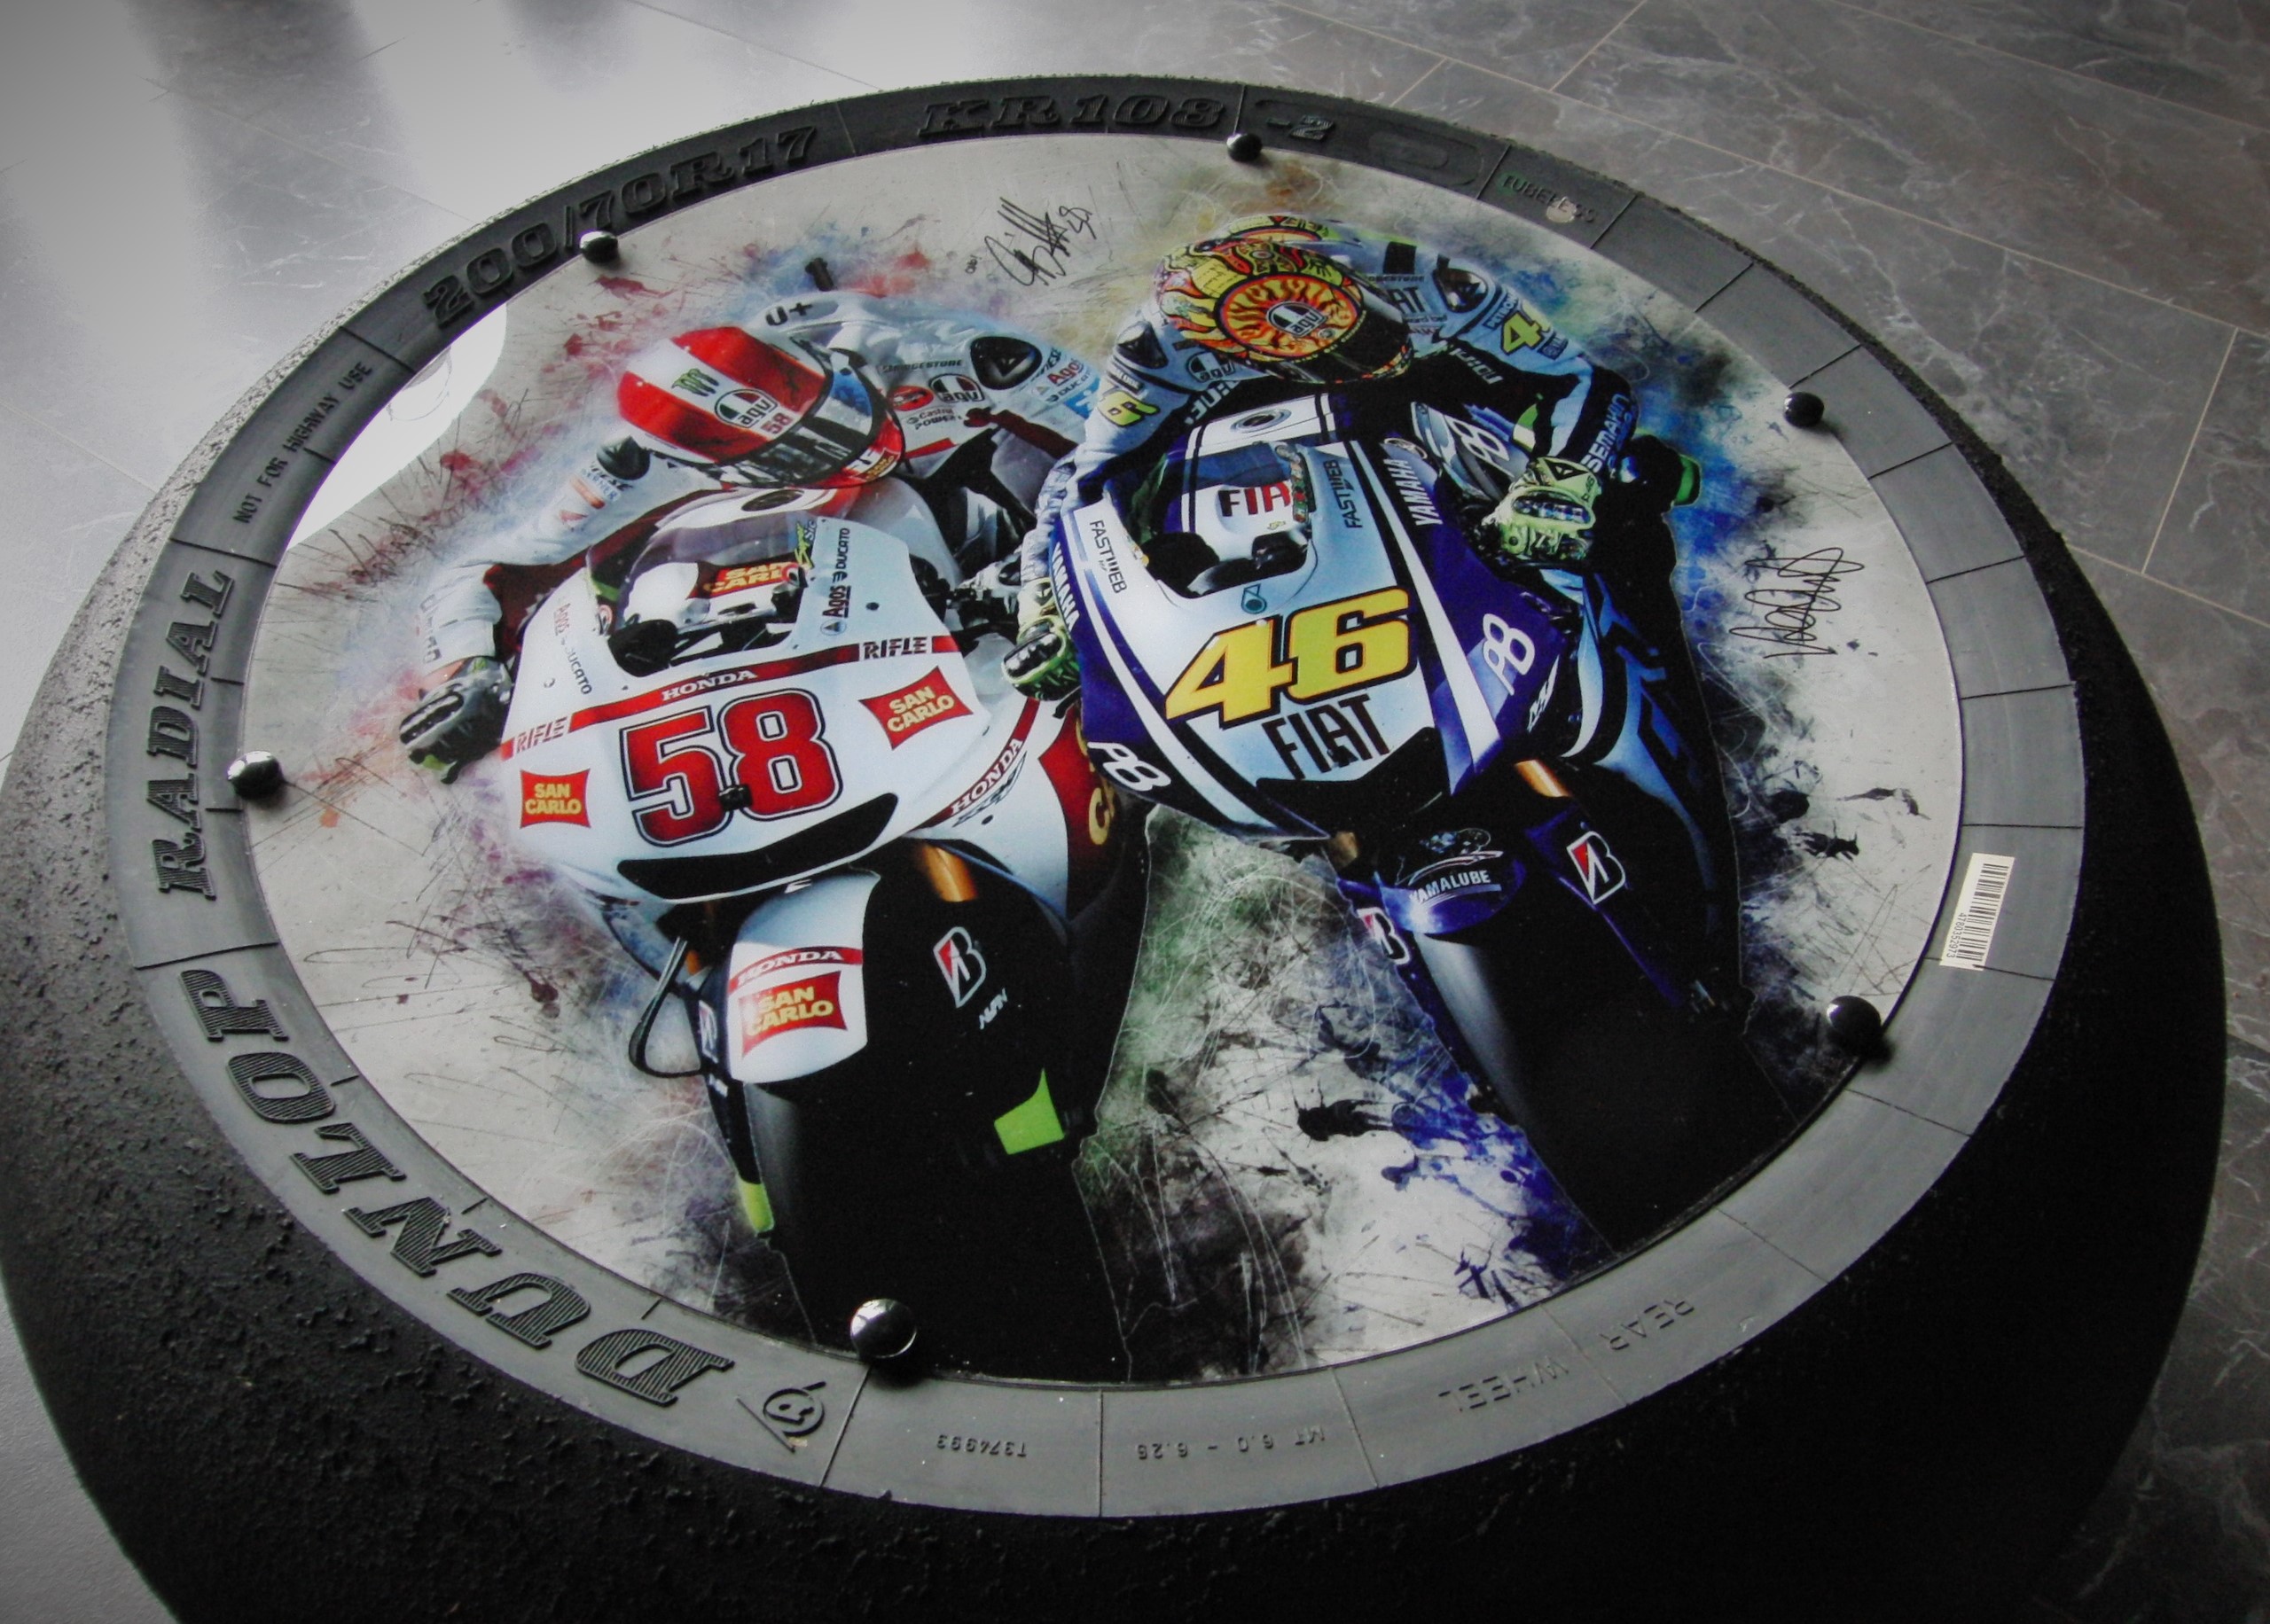 Dream Team Super Sic VR 46 GP/SBK Racing Slick Beistelltisch "Art" (aus der GP, Superbike) ,